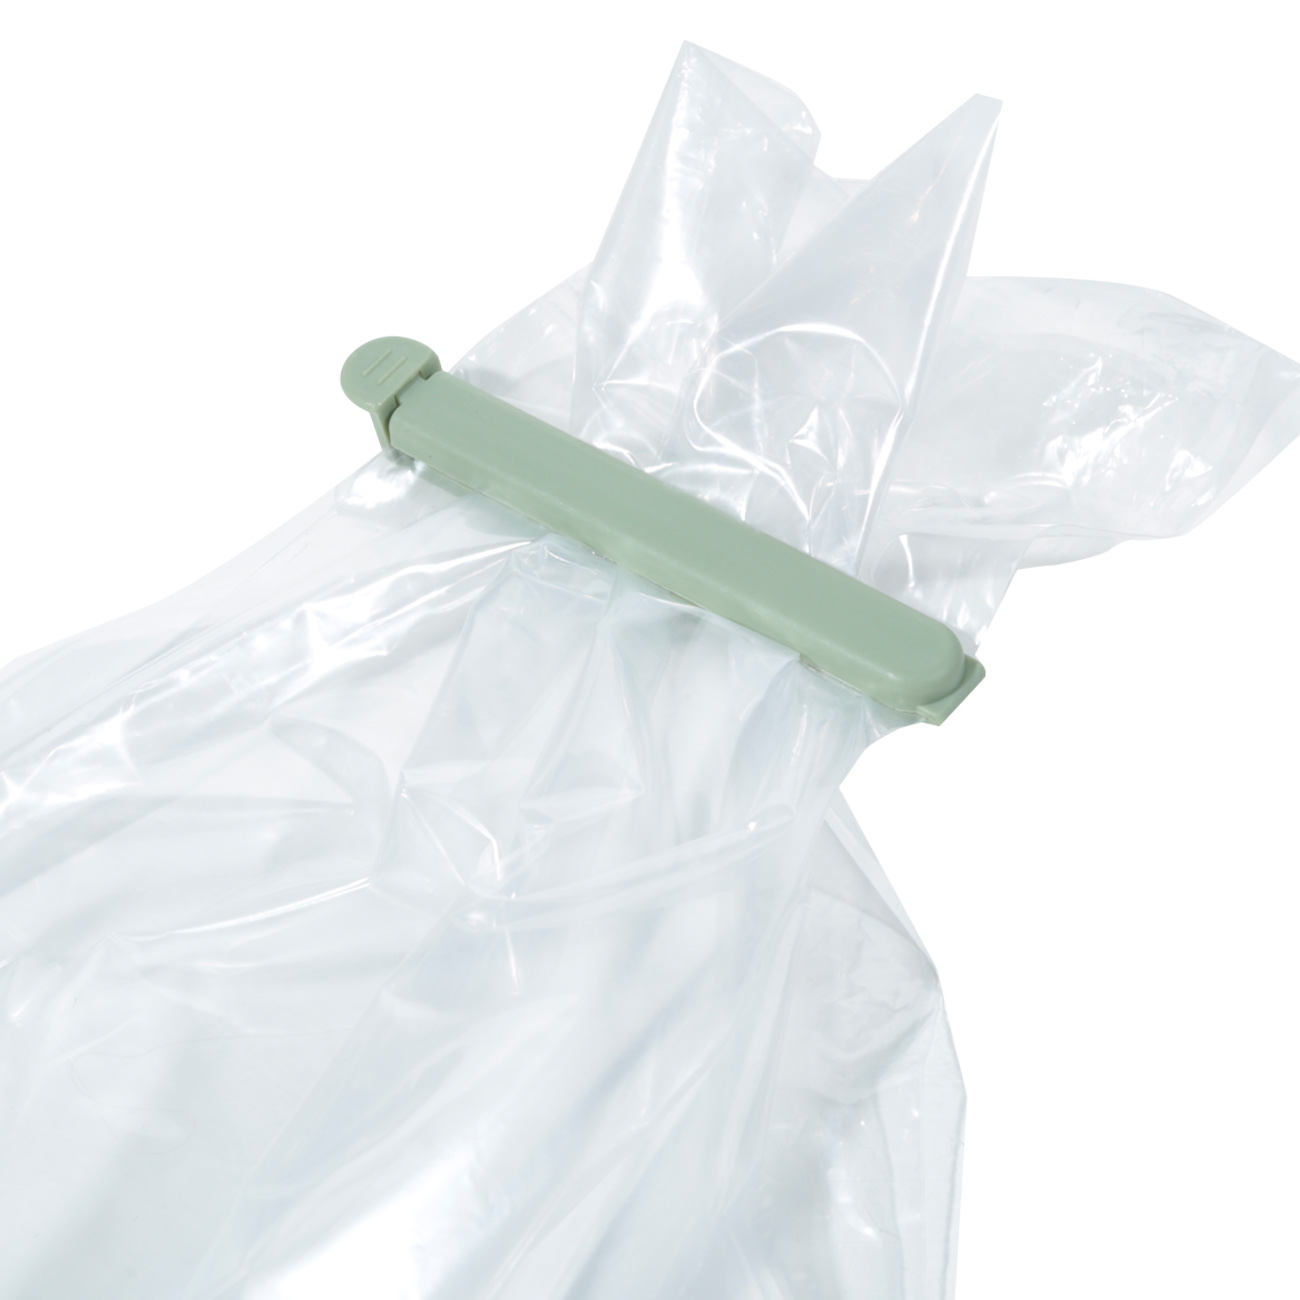 Bag clip set, 20 pcs, Plastic, White / Grey / Green, Assist изображение № 2